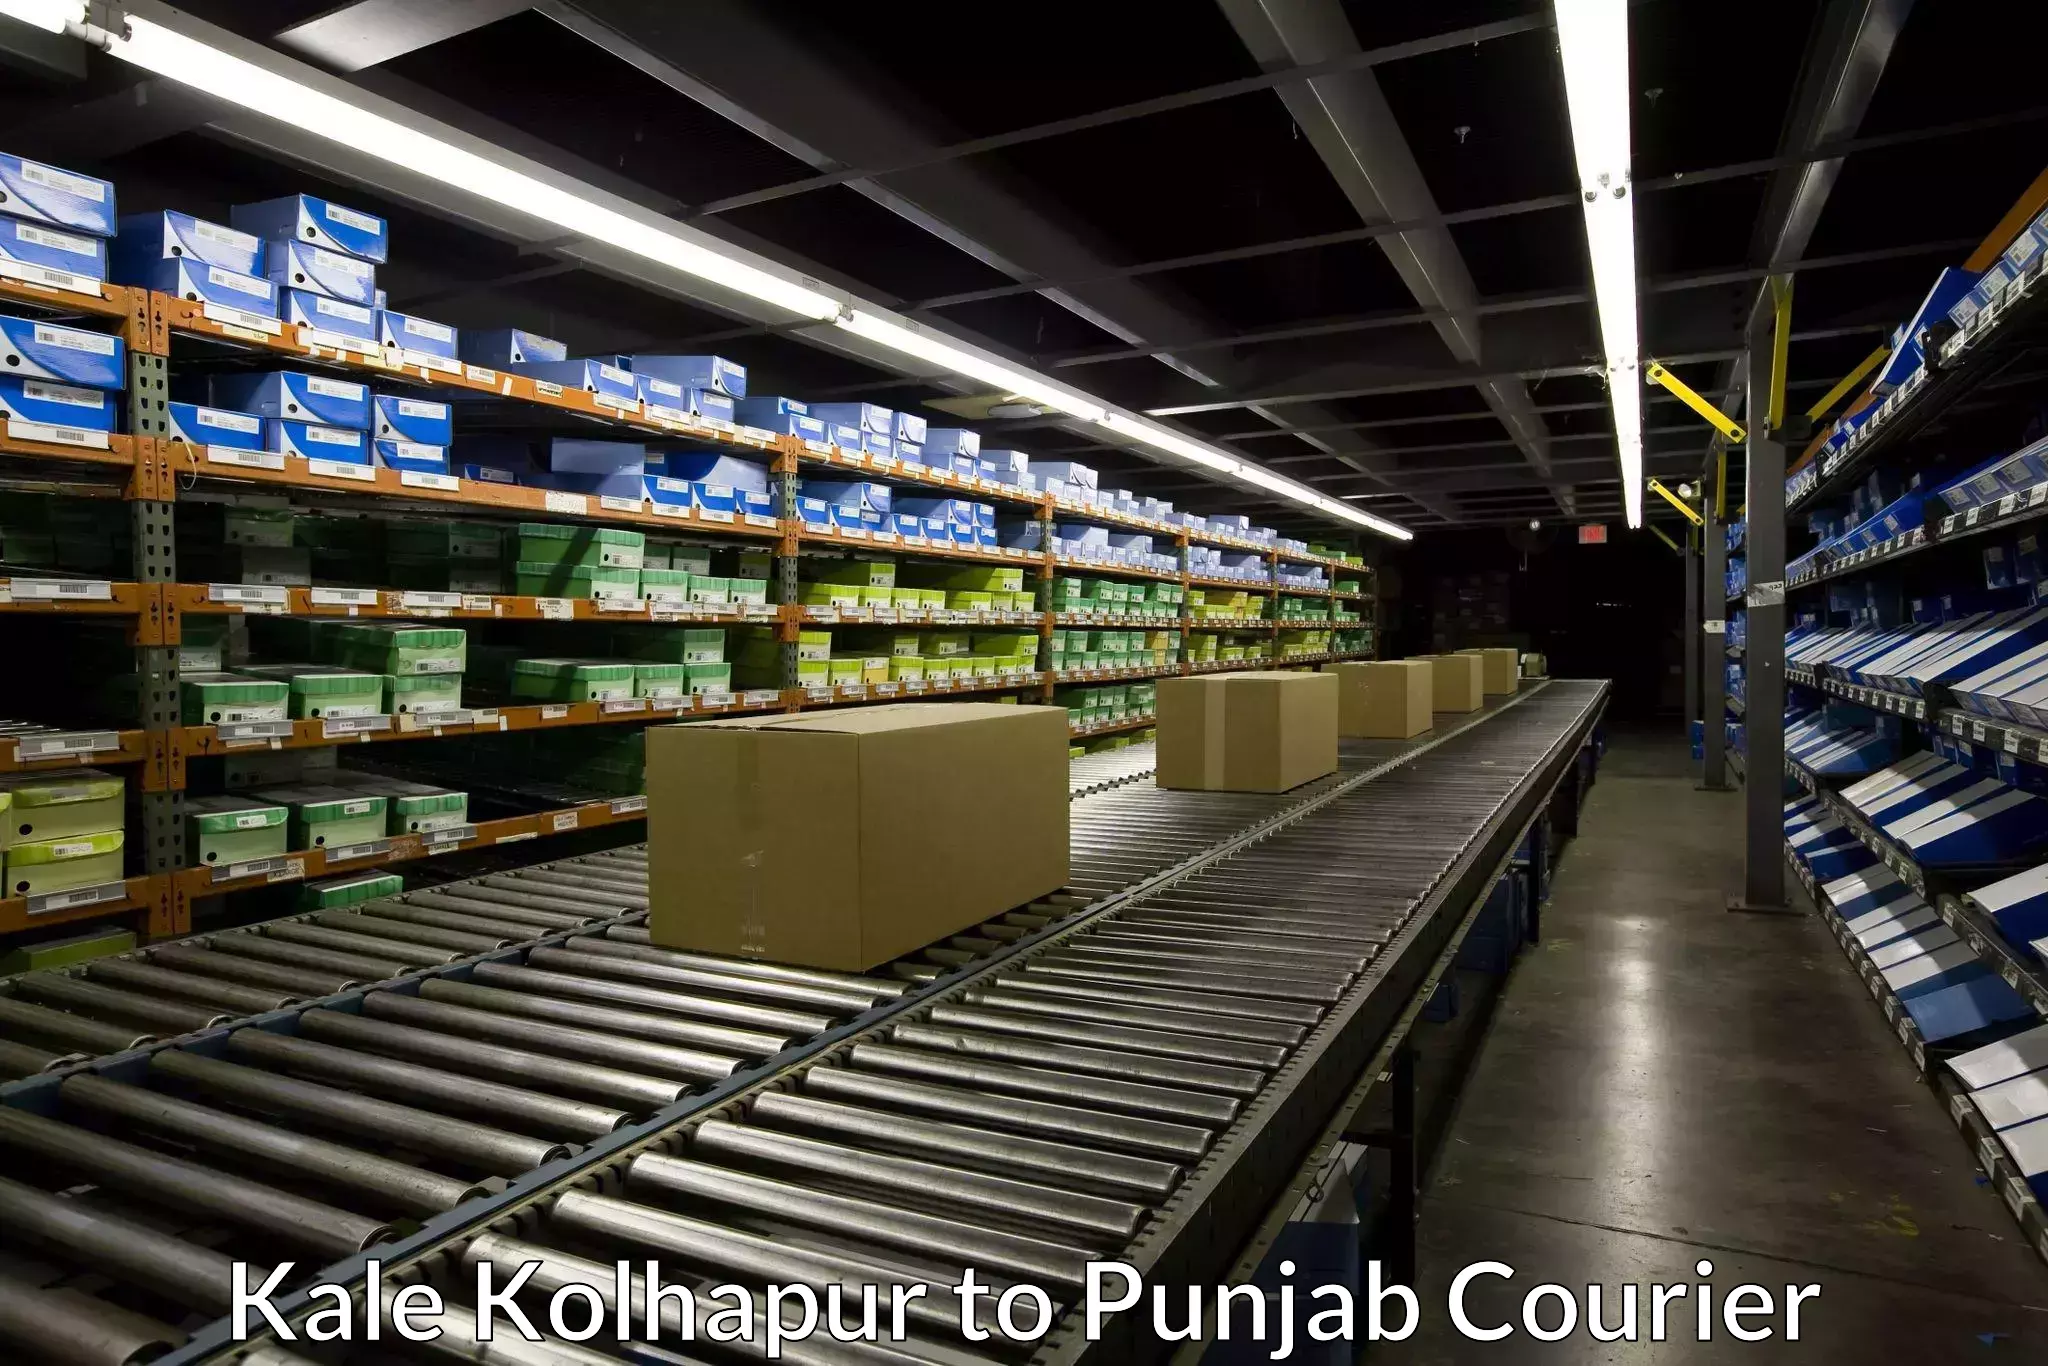 Ground shipping Kale Kolhapur to Punjab